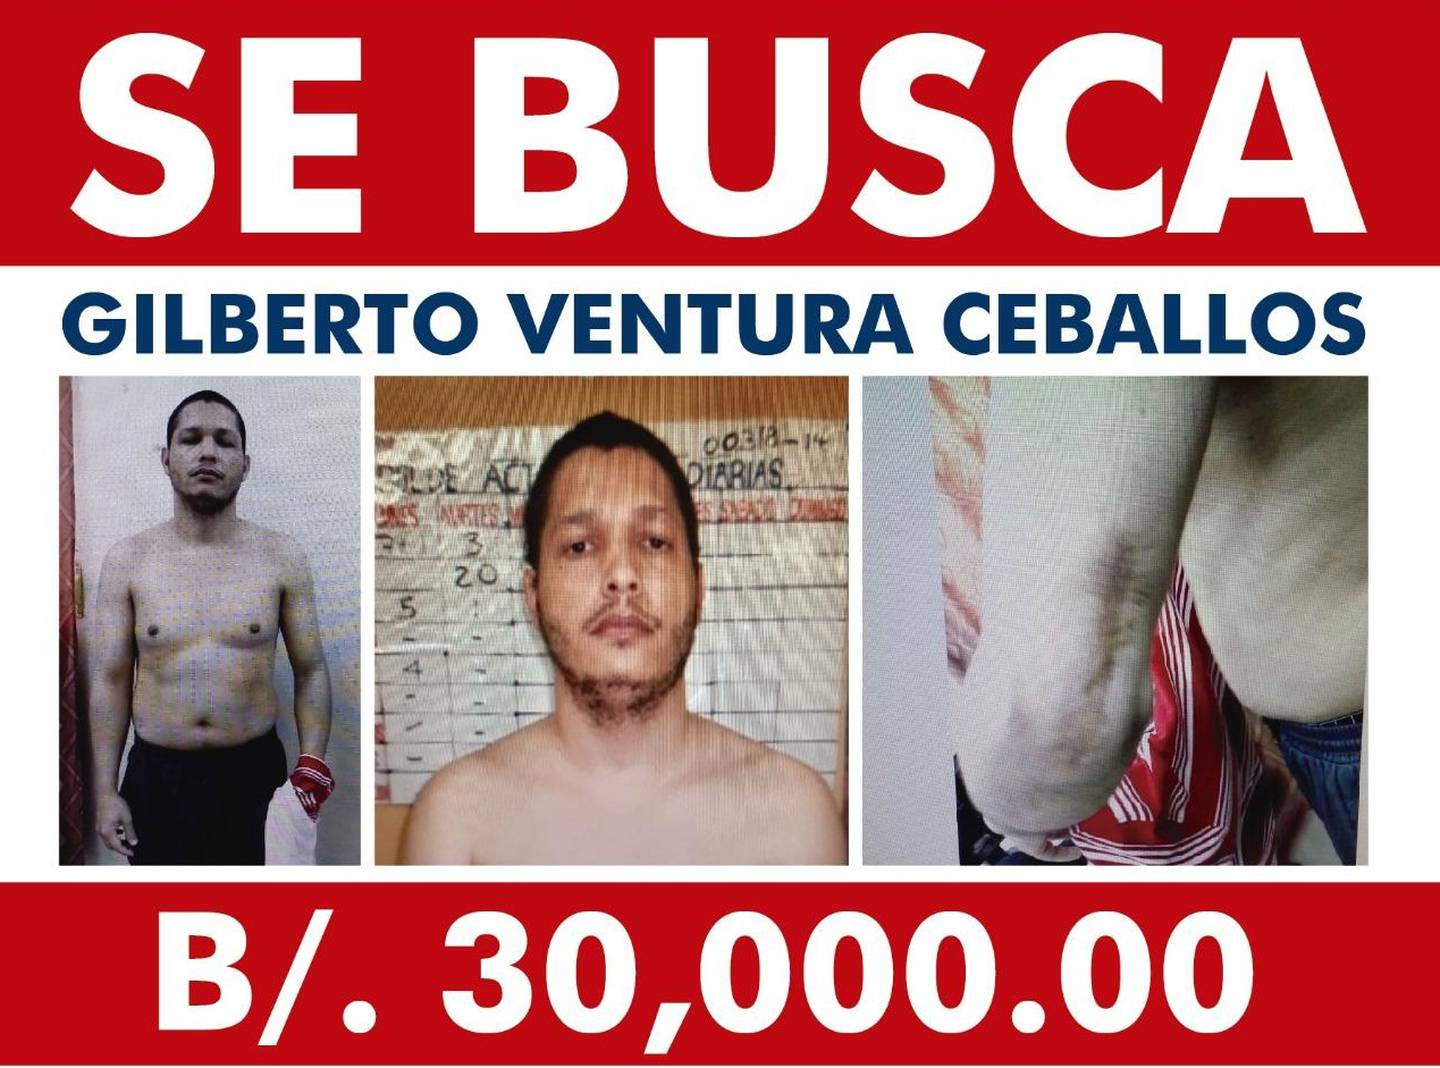 Gilberto Ventura Ceballos, condenado a 50 años por homicidio de cinco universitarios de origen chino en Panamá. Foto Policía Nacional de Panamá